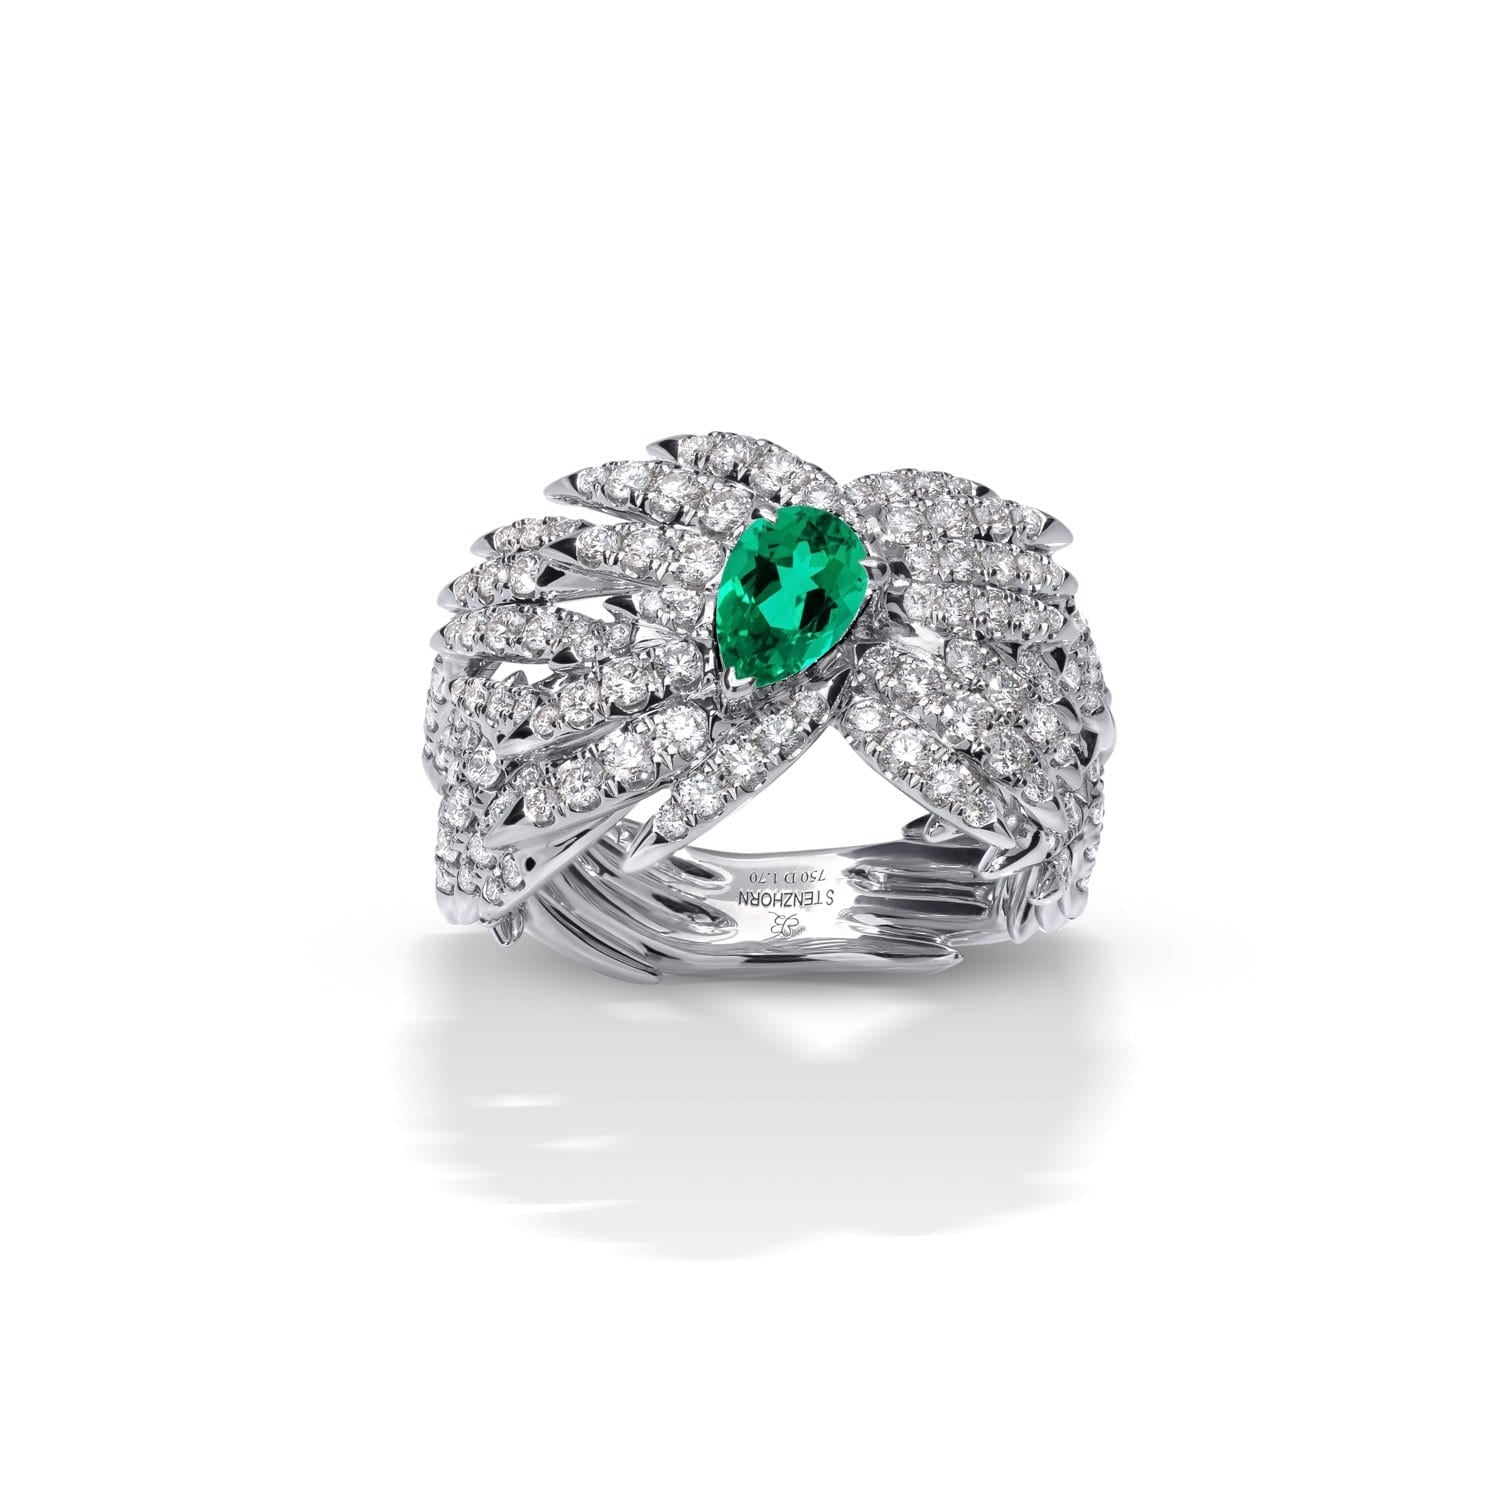 BORA BORA Diamond and Emerald Ring